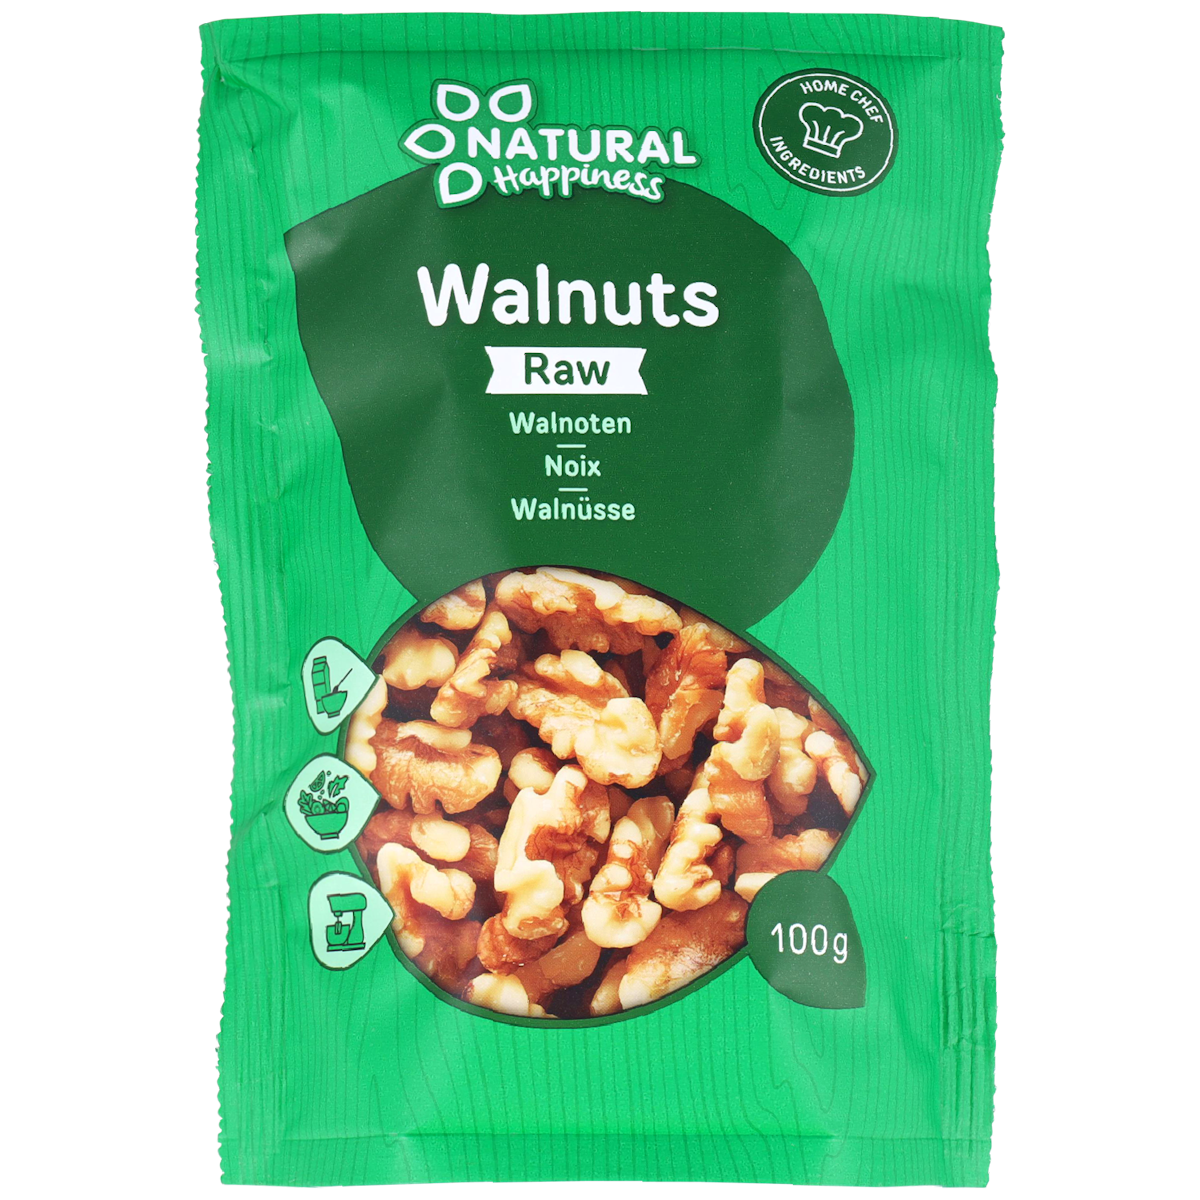 Natural Happiness Walnuts